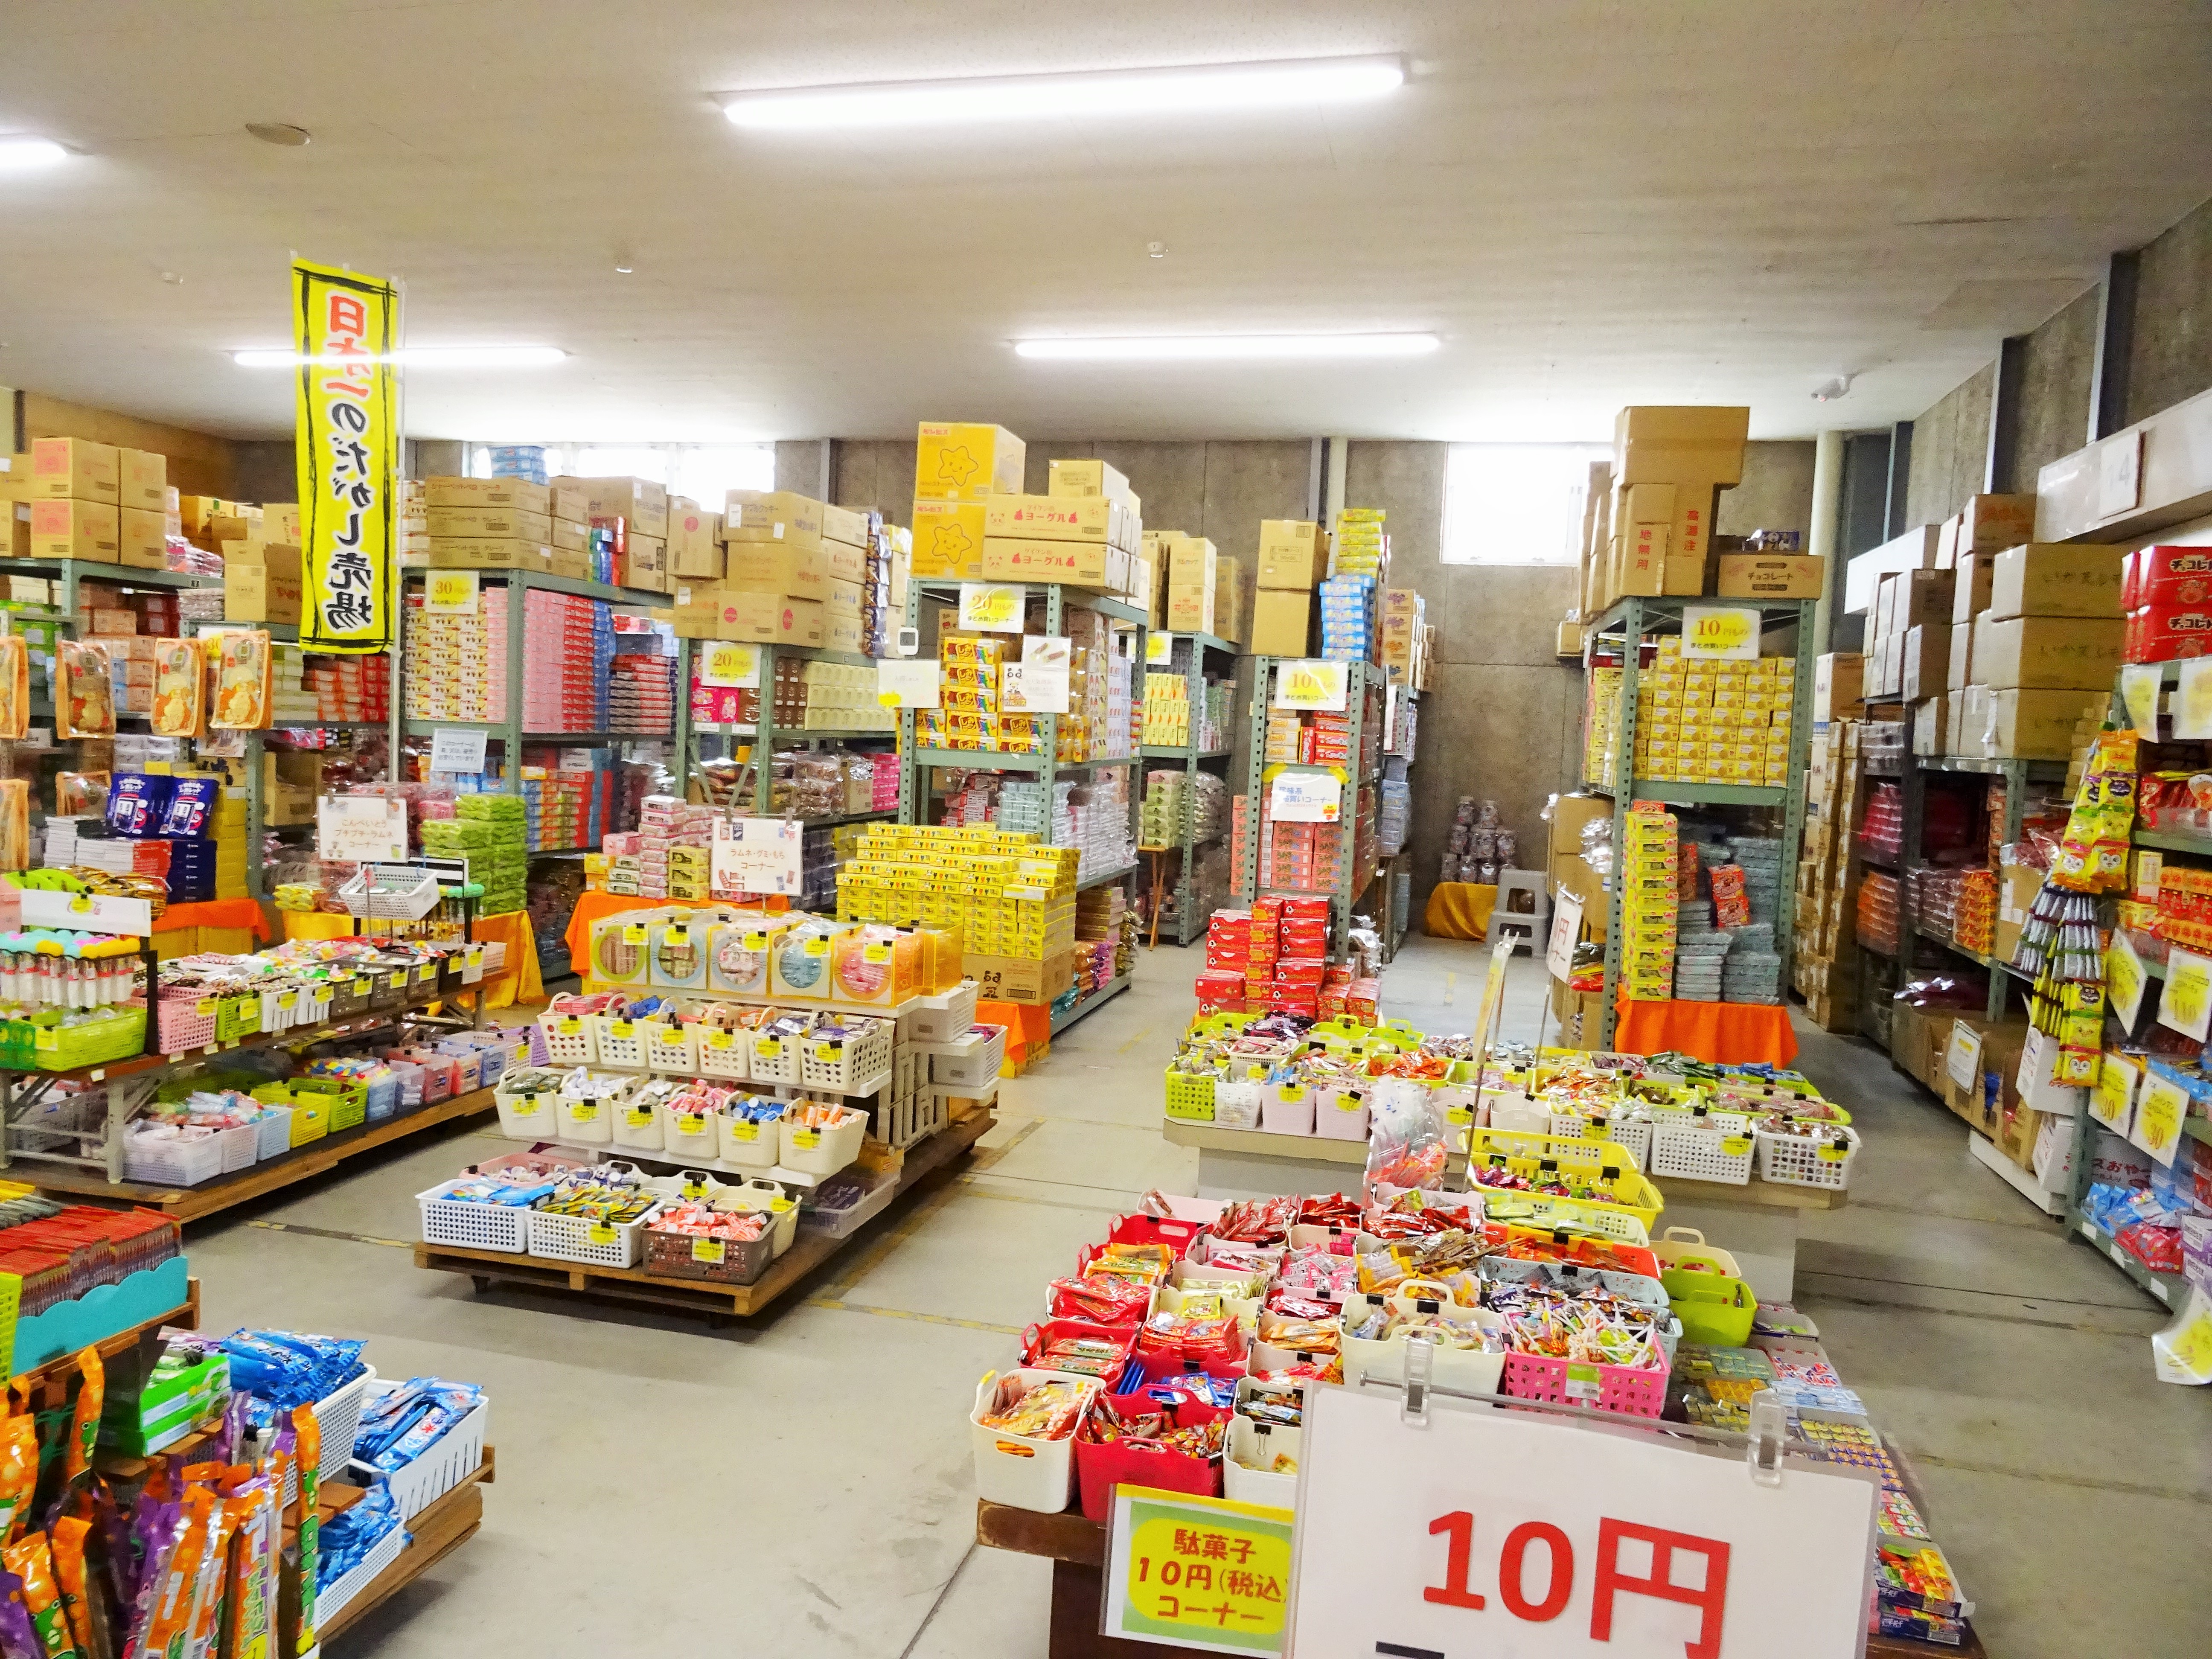 岡山の日本一のだがし売り場が本当に日本一の大きさで 兵庫県からいいもの紹介